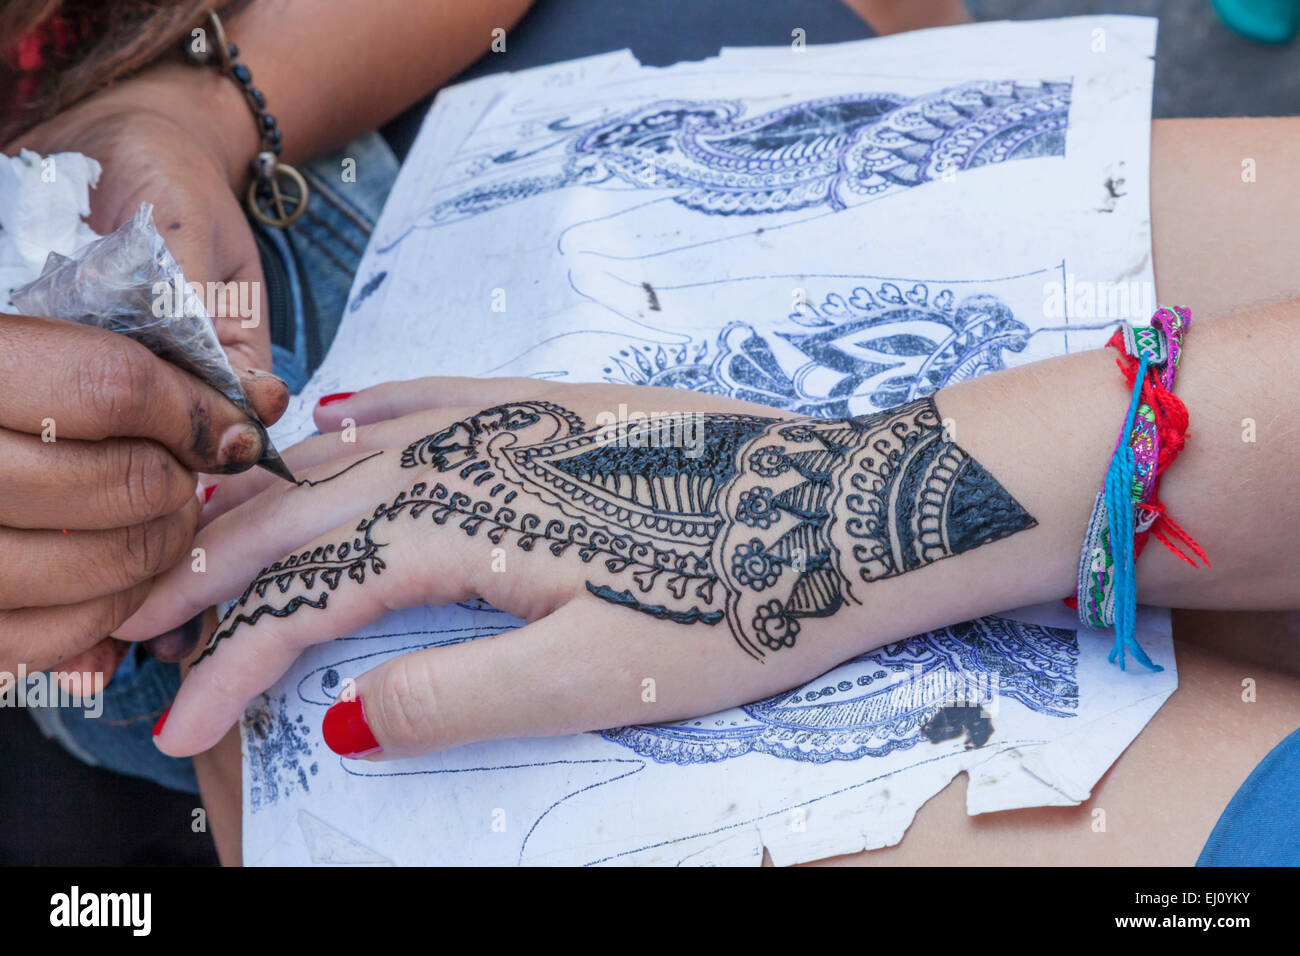 Thaïlande, Bangkok, Khaosan Road, le trafic, le détail de la main peinte au henné Banque D'Images